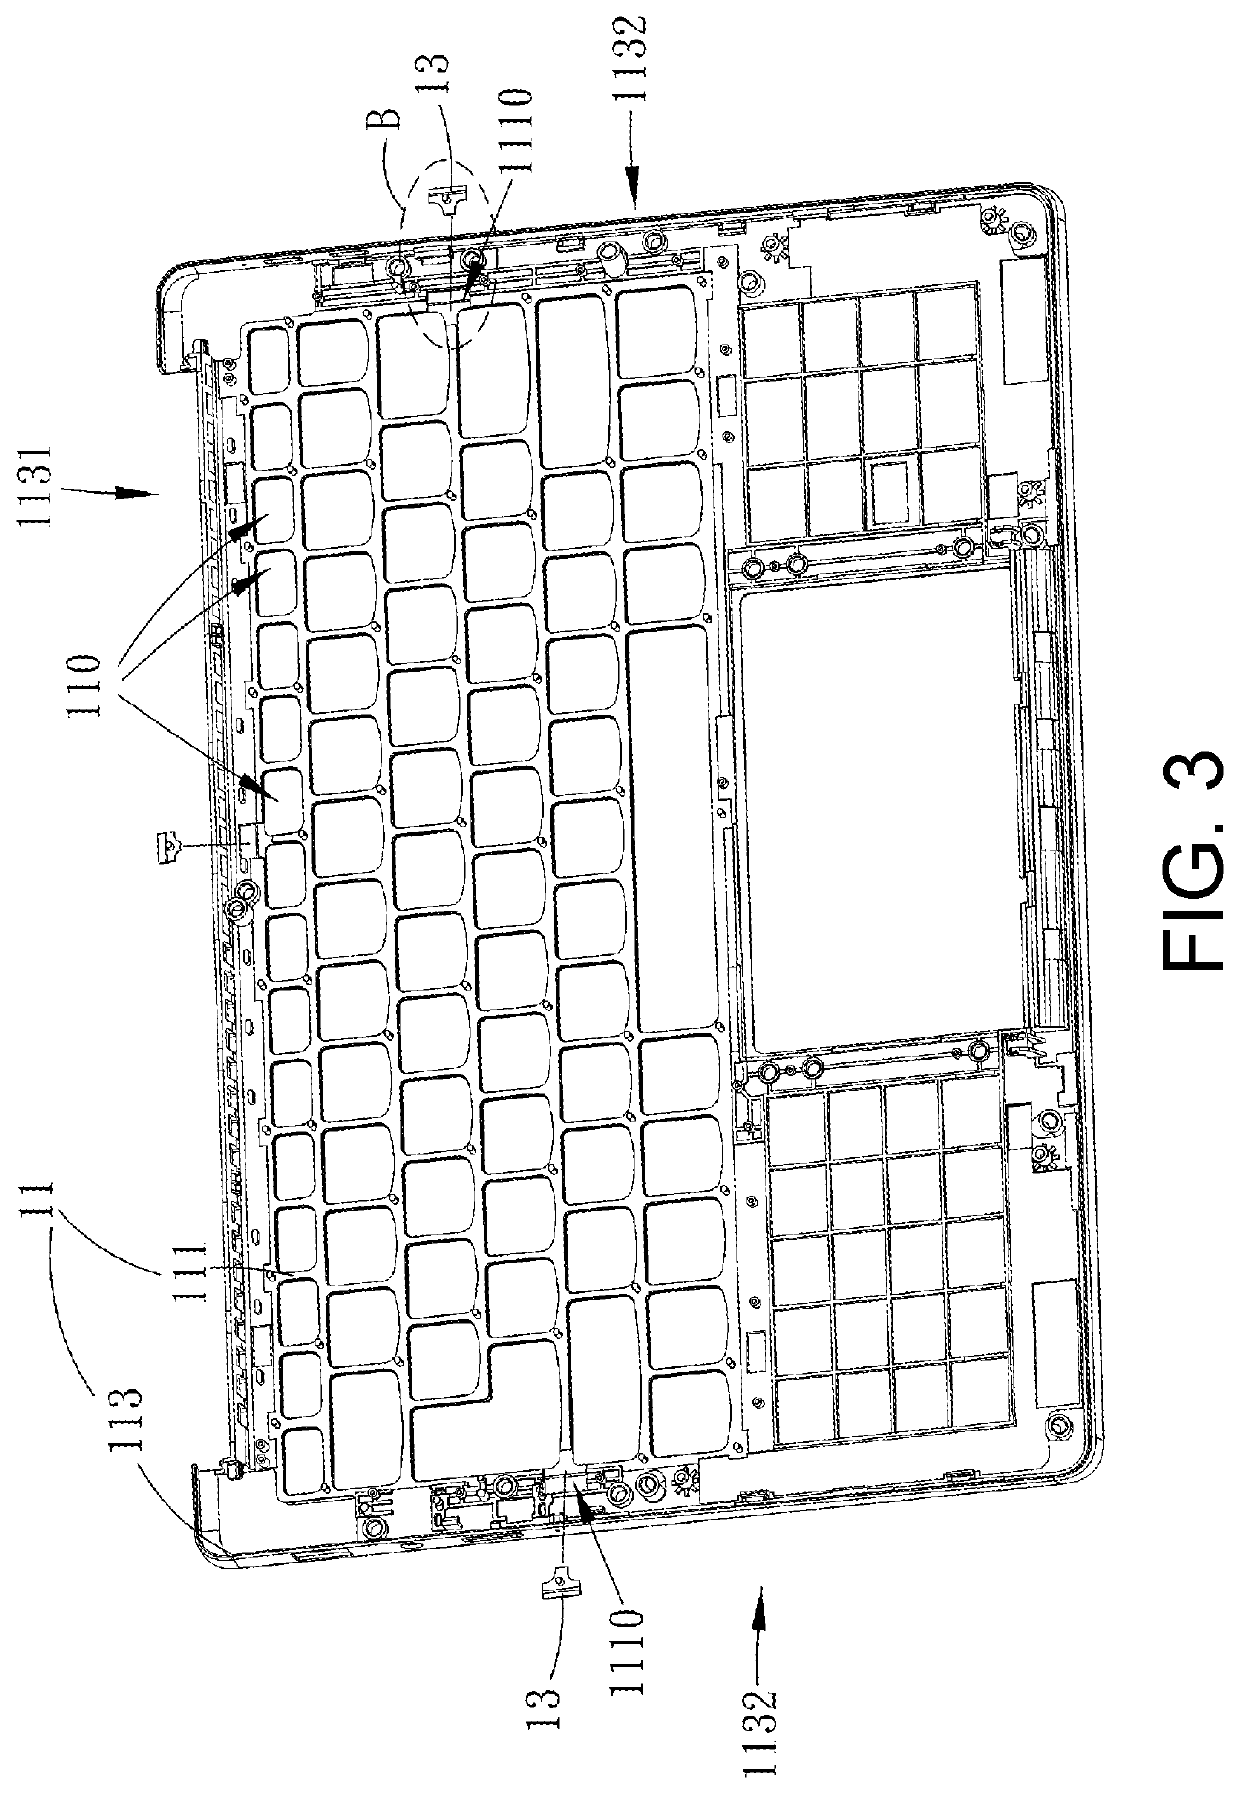 Keyboard frame and keyboard